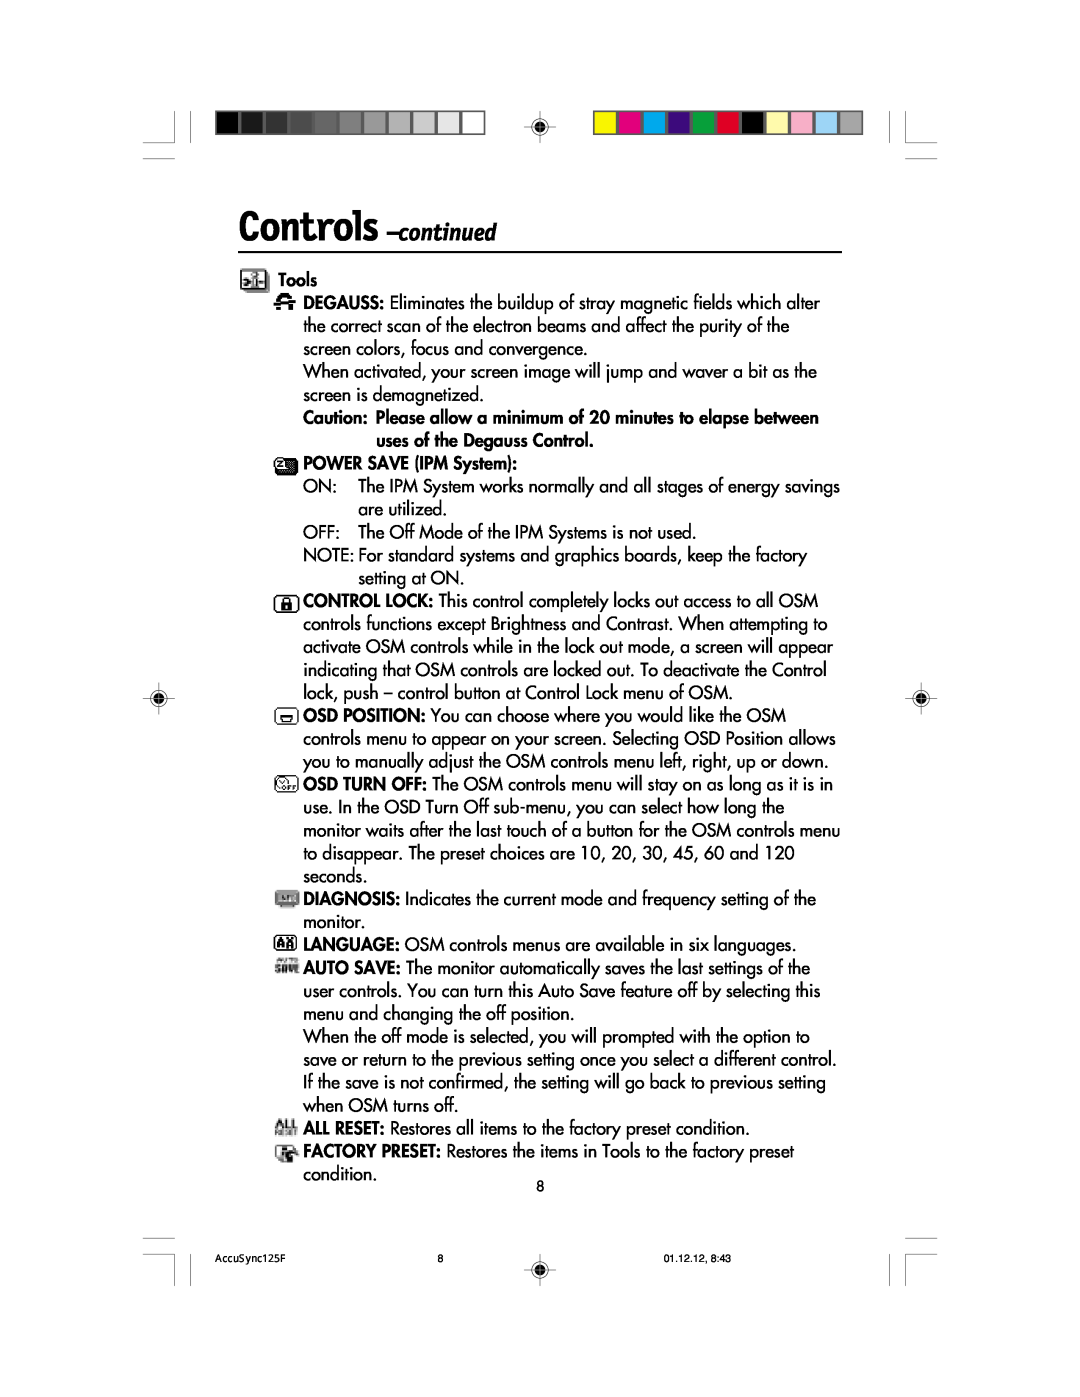 NEC 125F user manual Controls -continued, Tools 